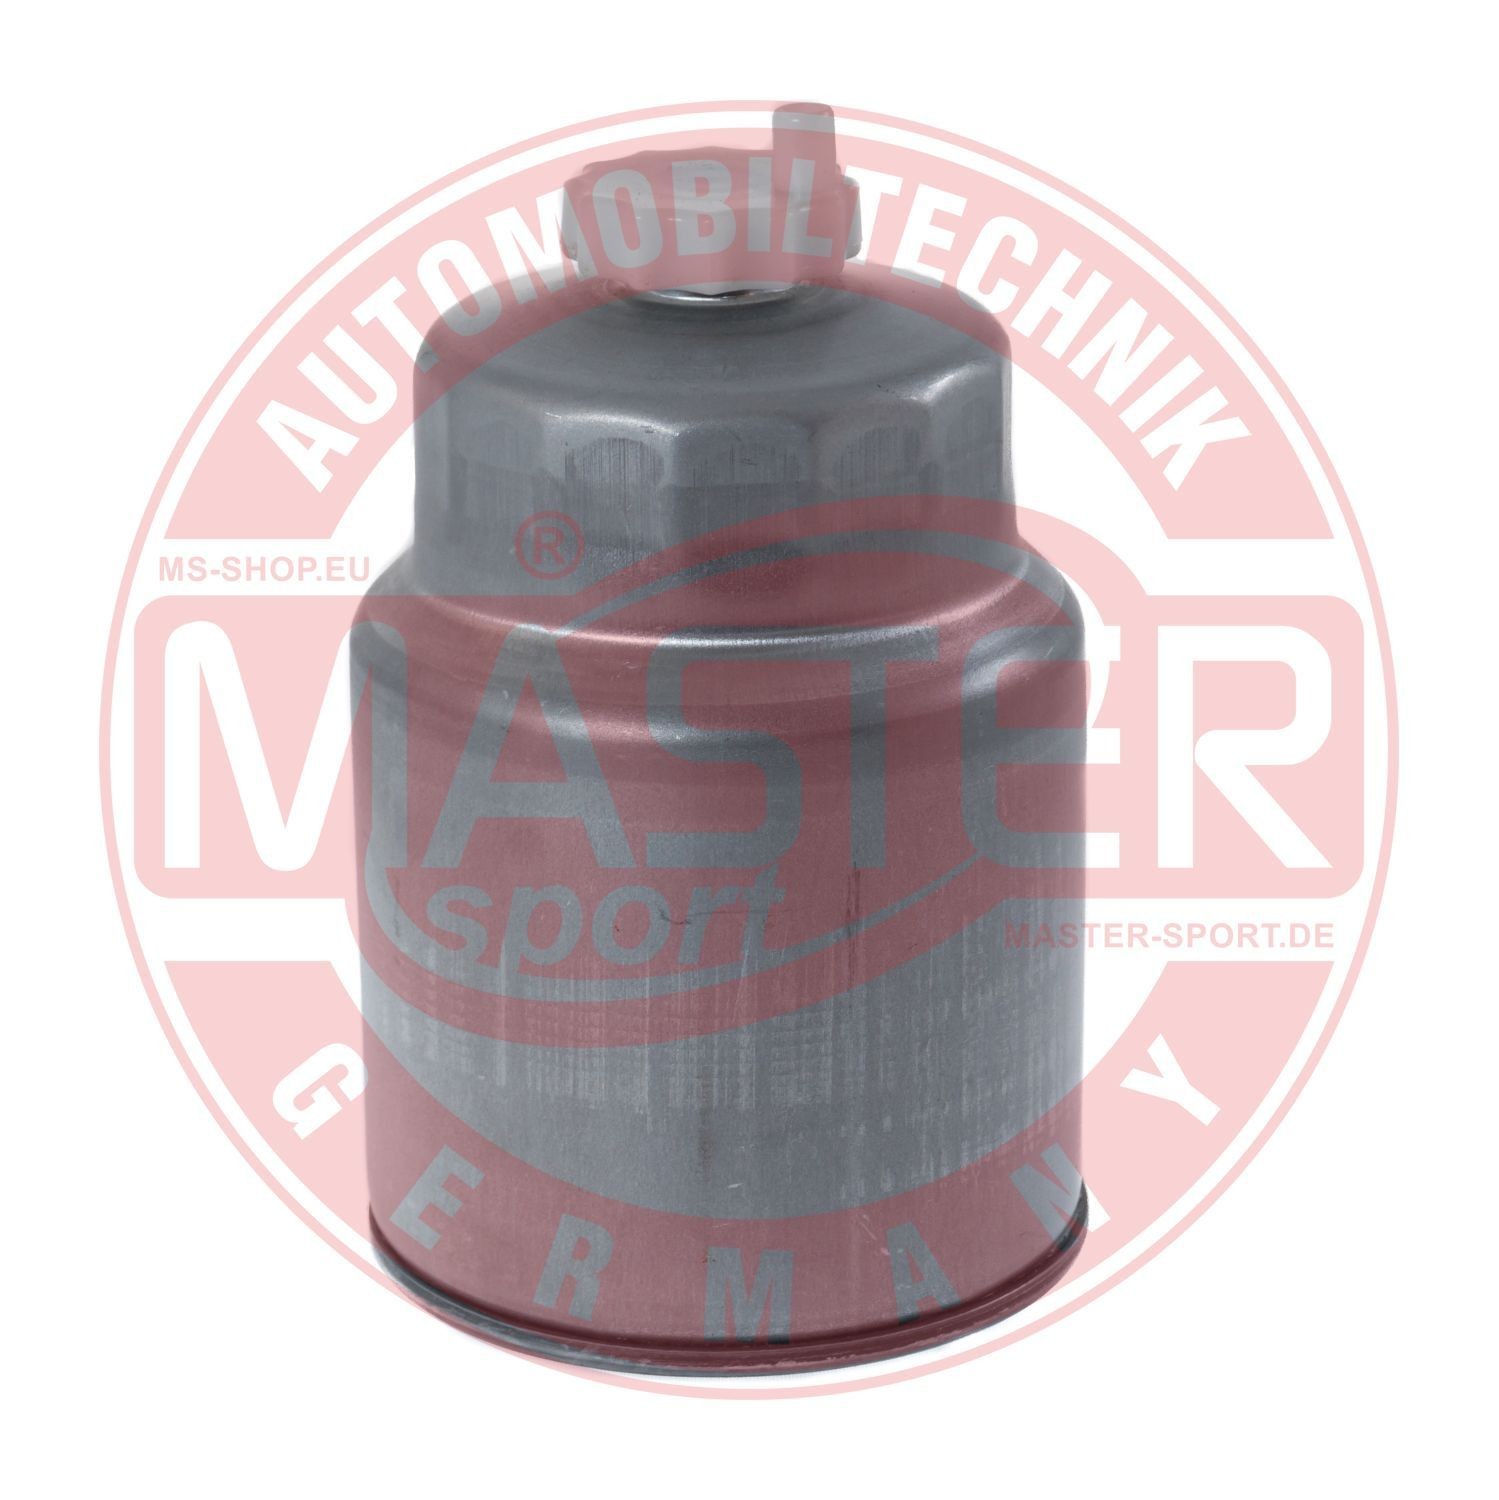 430940220 MASTER-SPORT 940/22-KF-PCS-MS Fuel filter 1906.84